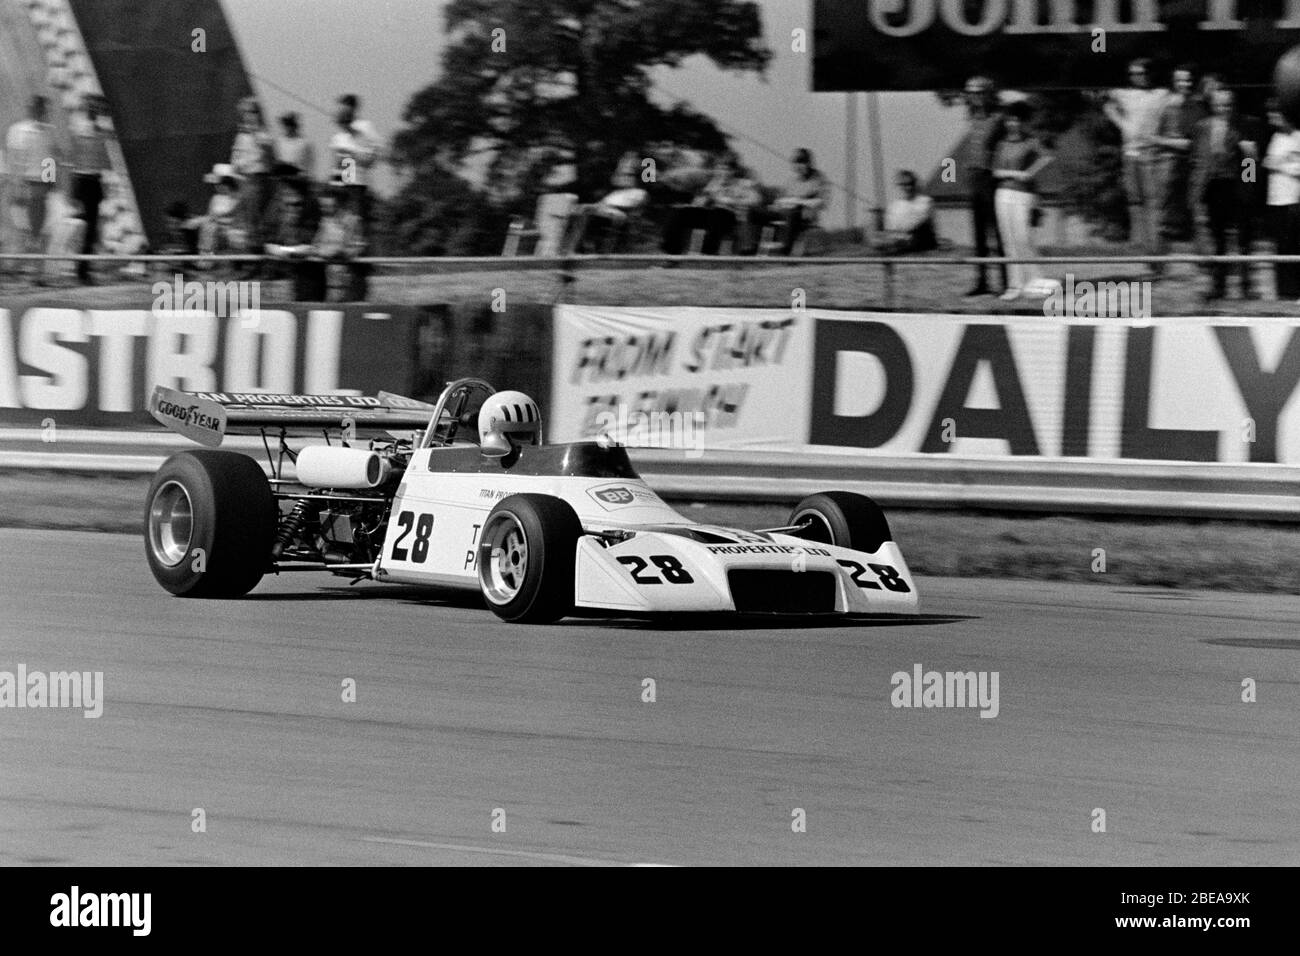 Tom Pryce's Formula Atlantic Motul M1 au championnat Yellow pages qui soutient le Grand prix britannique de 1973. Banque D'Images